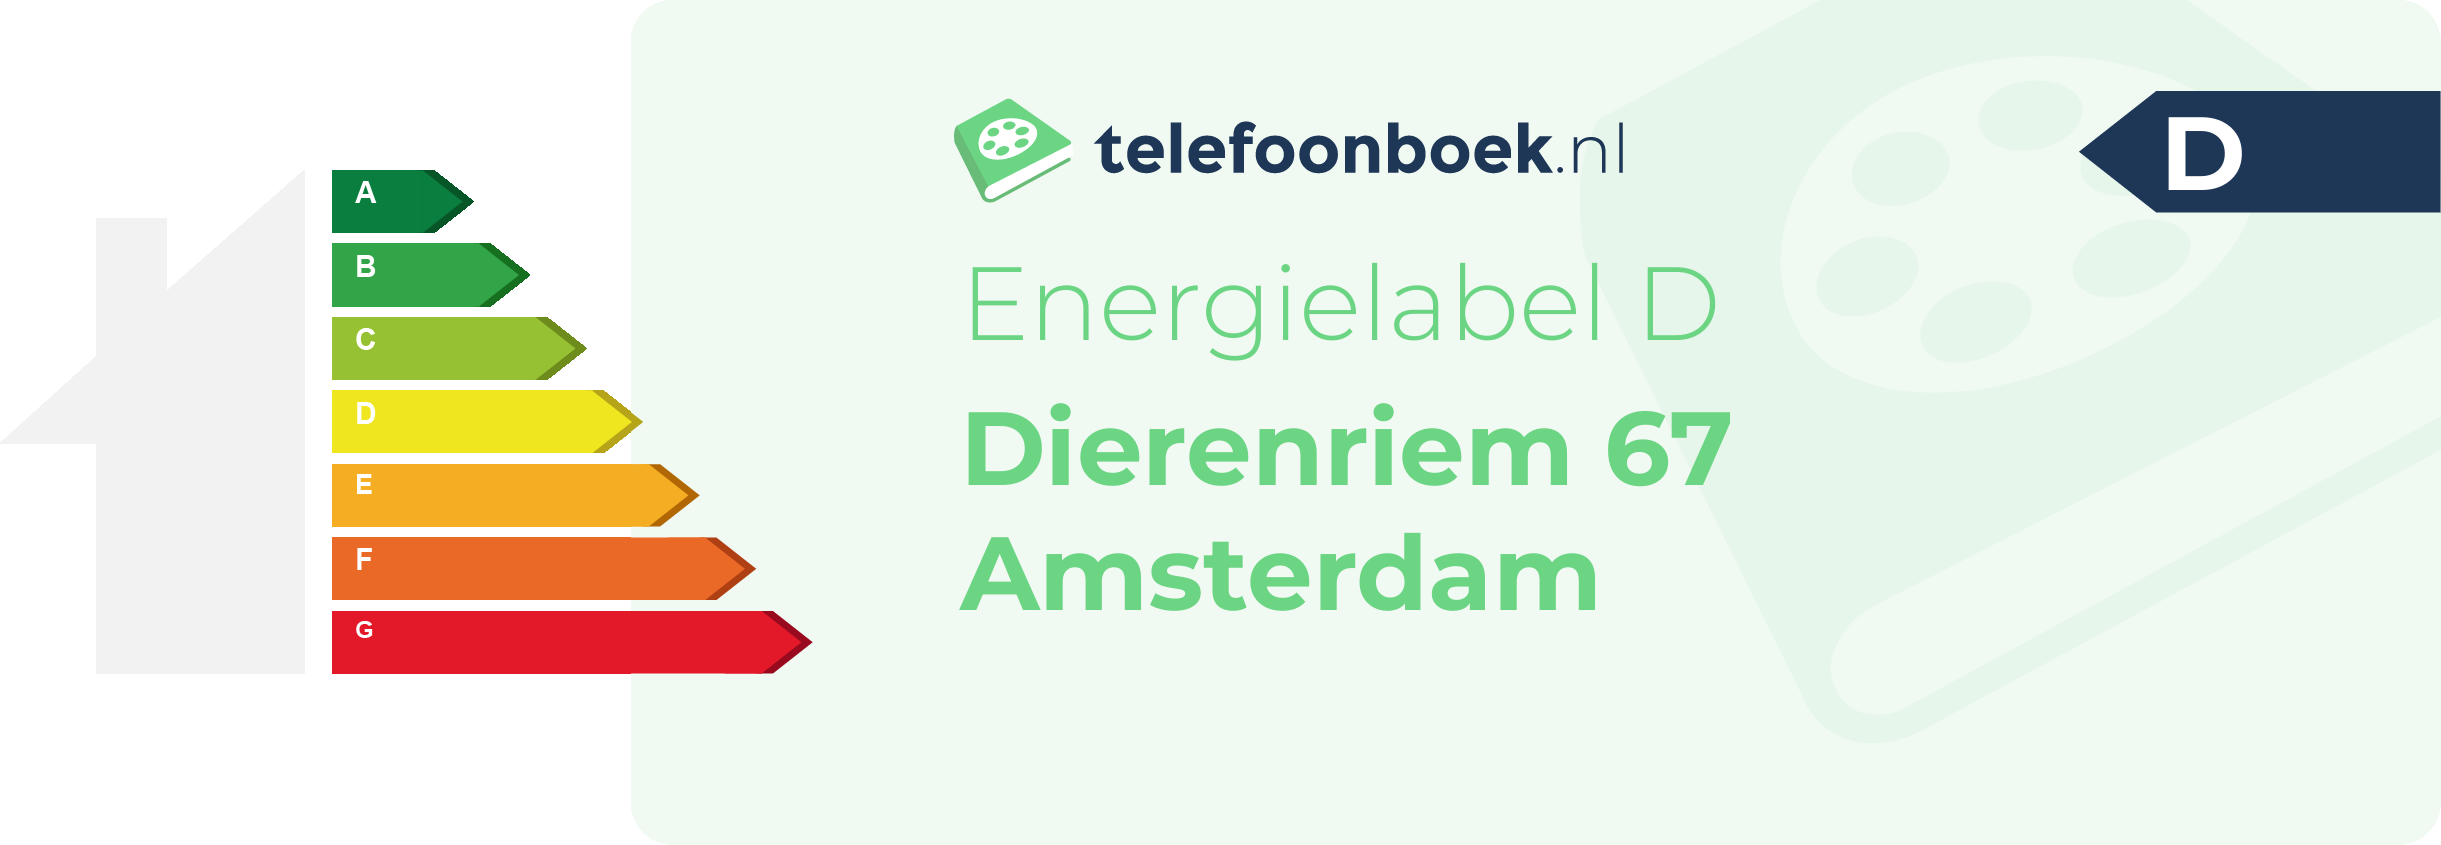 Energielabel Dierenriem 67 Amsterdam